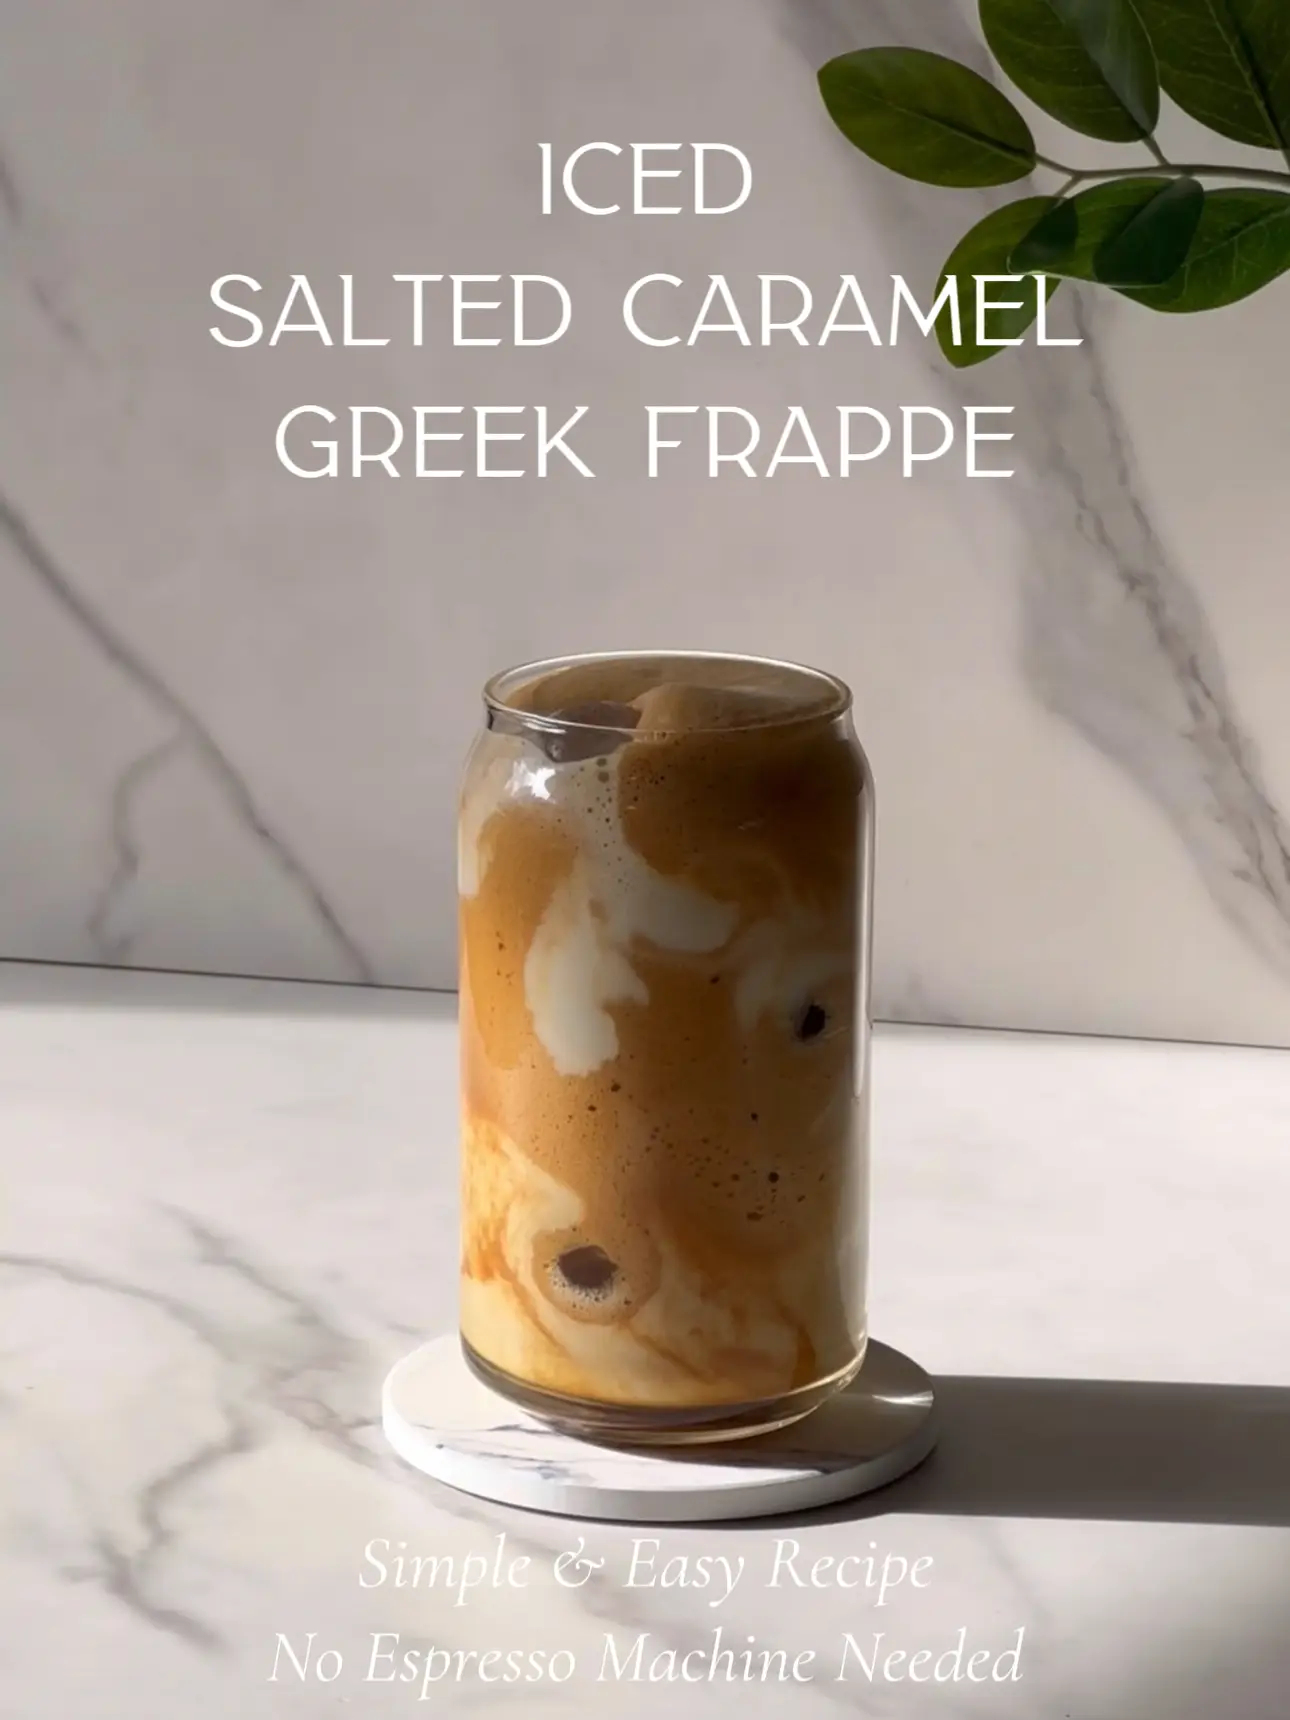 Greek Frappe Maker # No.1 in the world